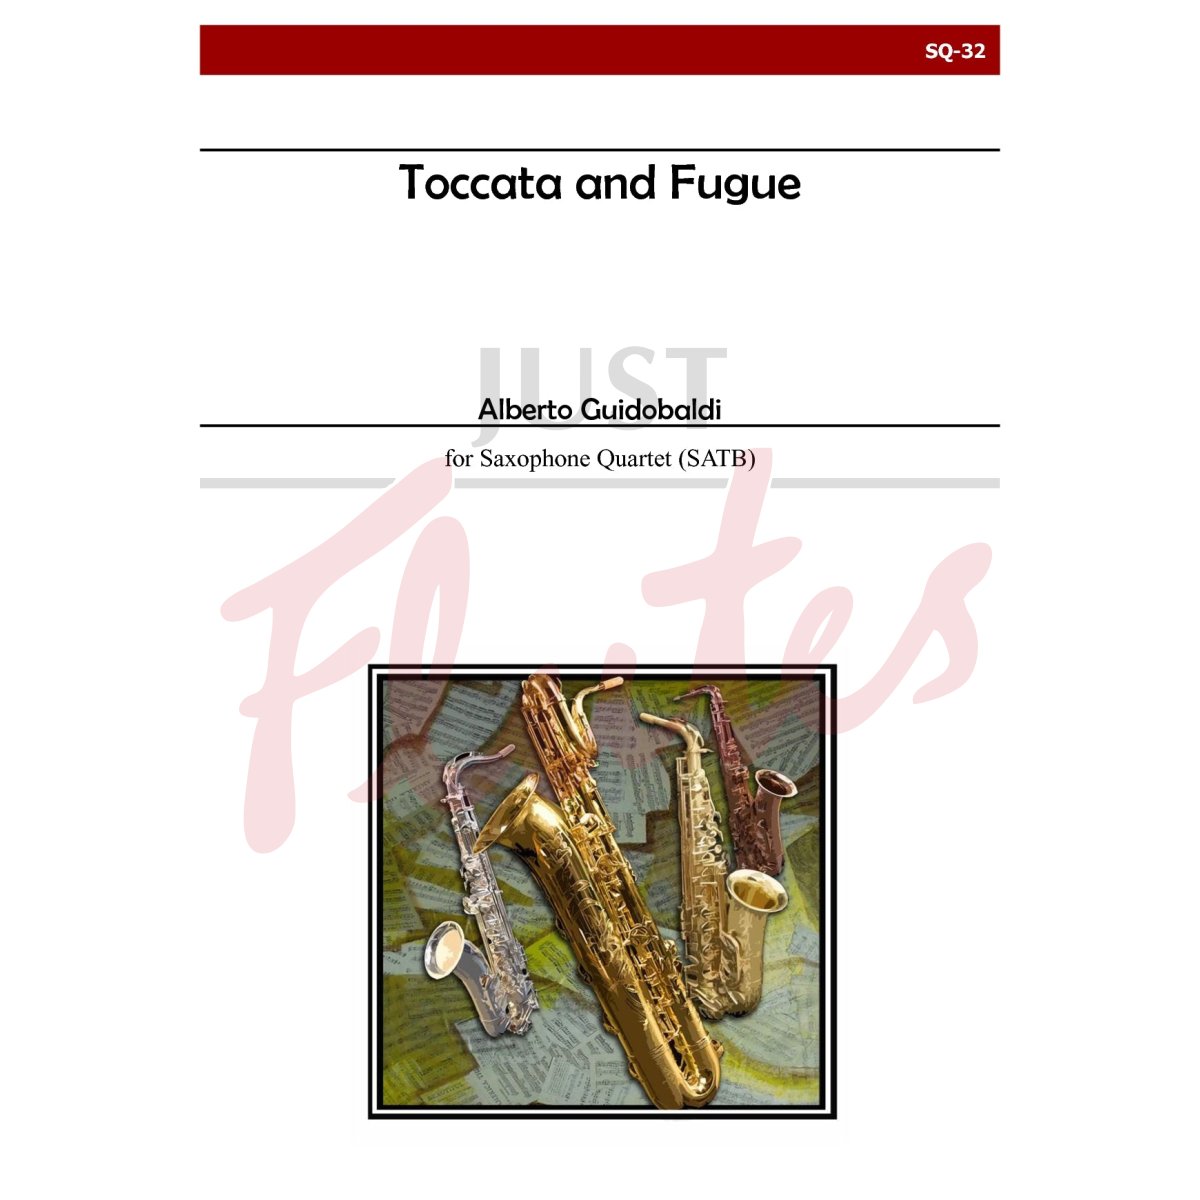 Toccata and Fugue for Saxophone Quartet